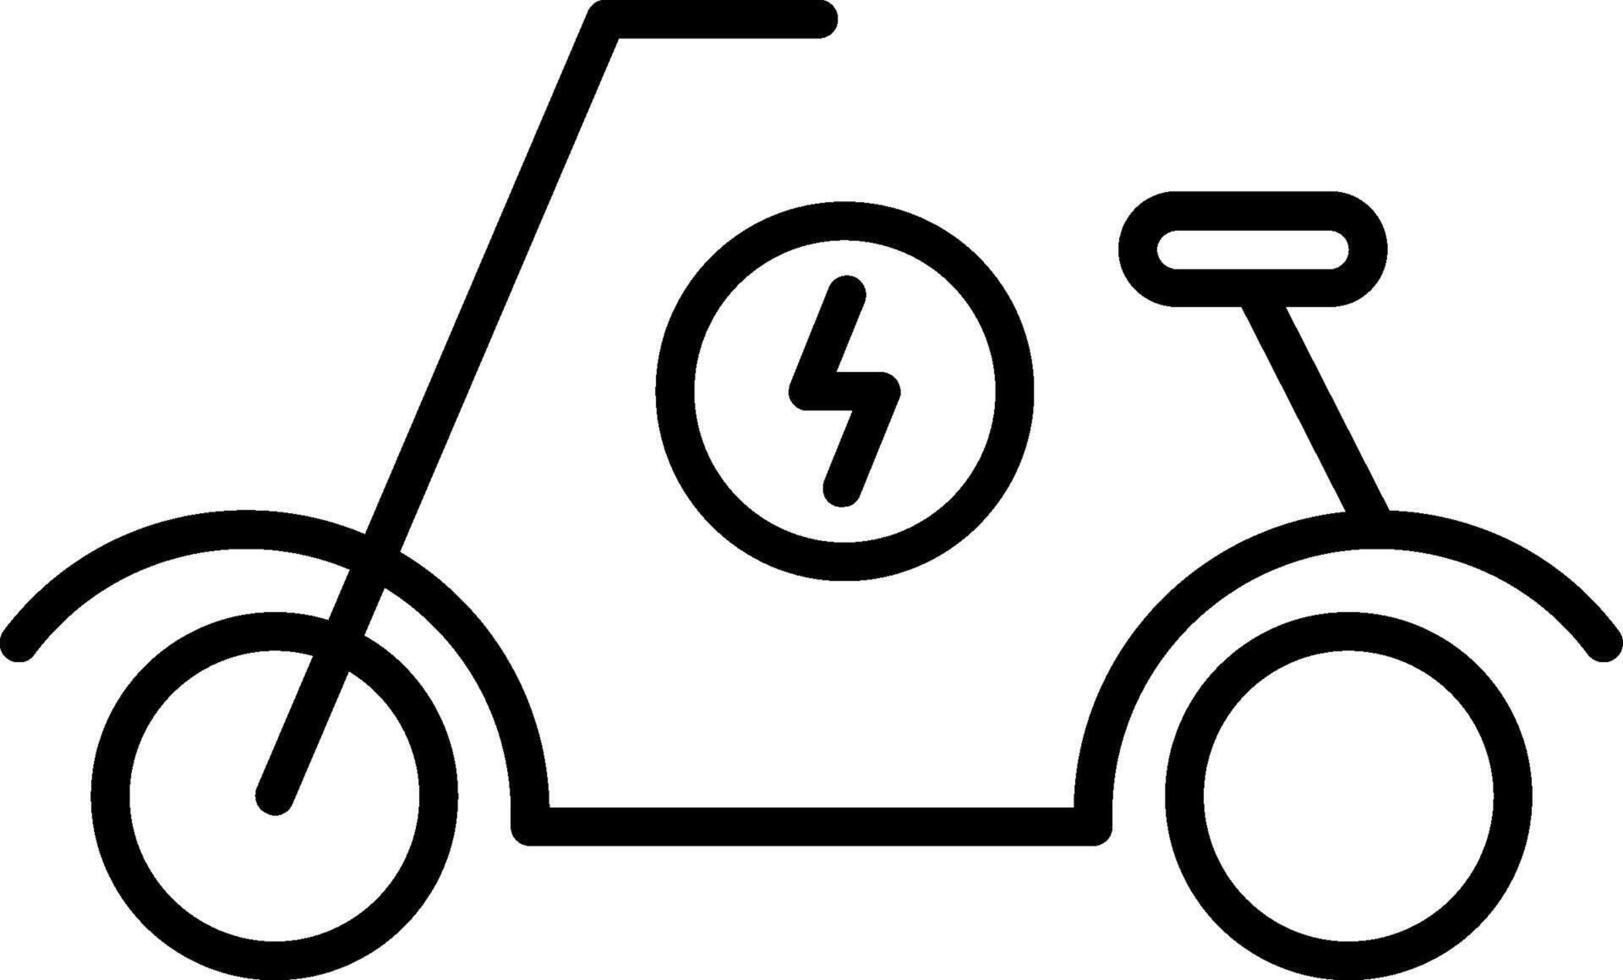 ícone de linha de scooter vetor